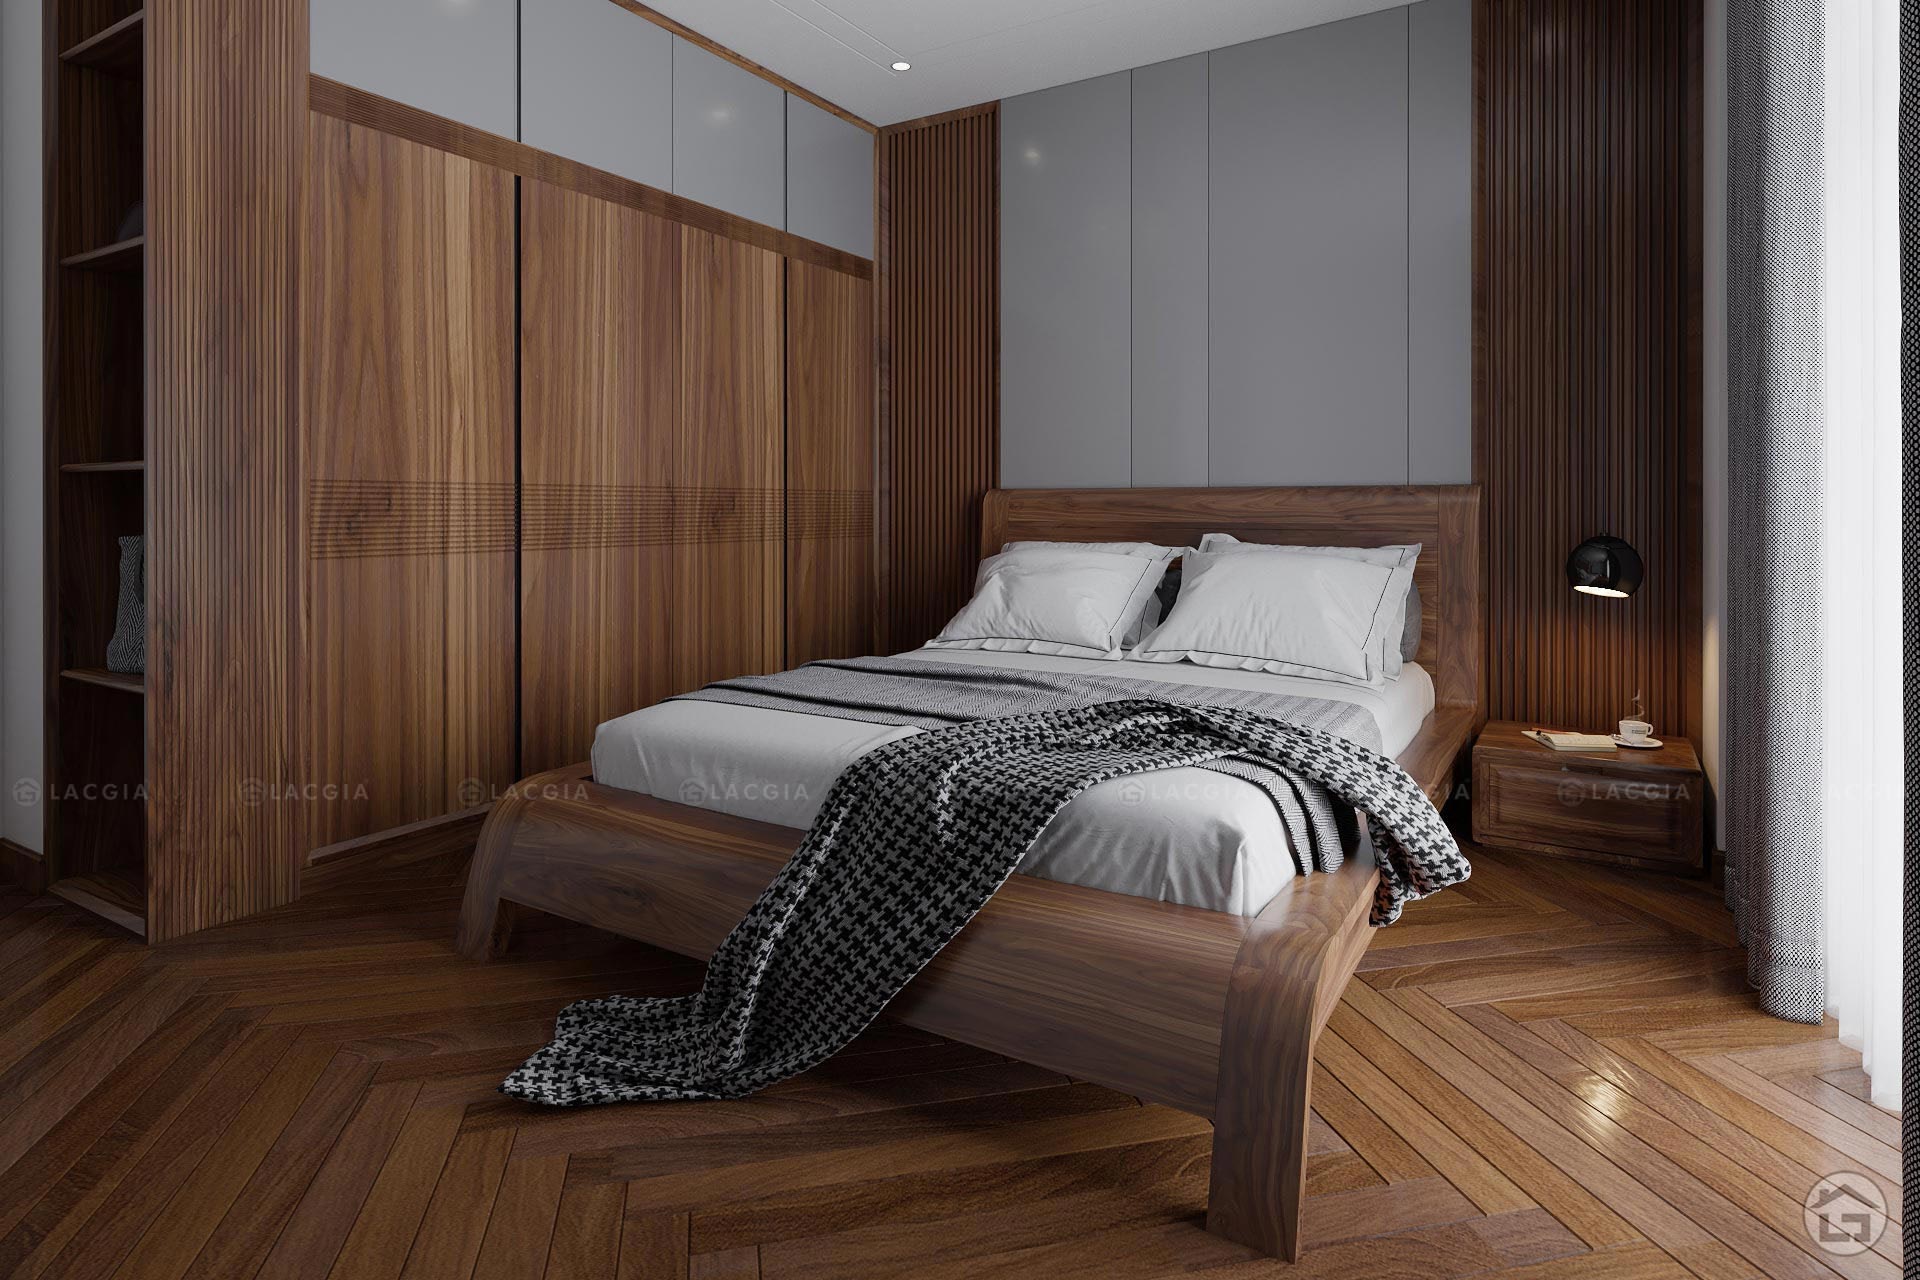 Mẫu phòng ngủ Master thiết kế theo phong cách hiện đại